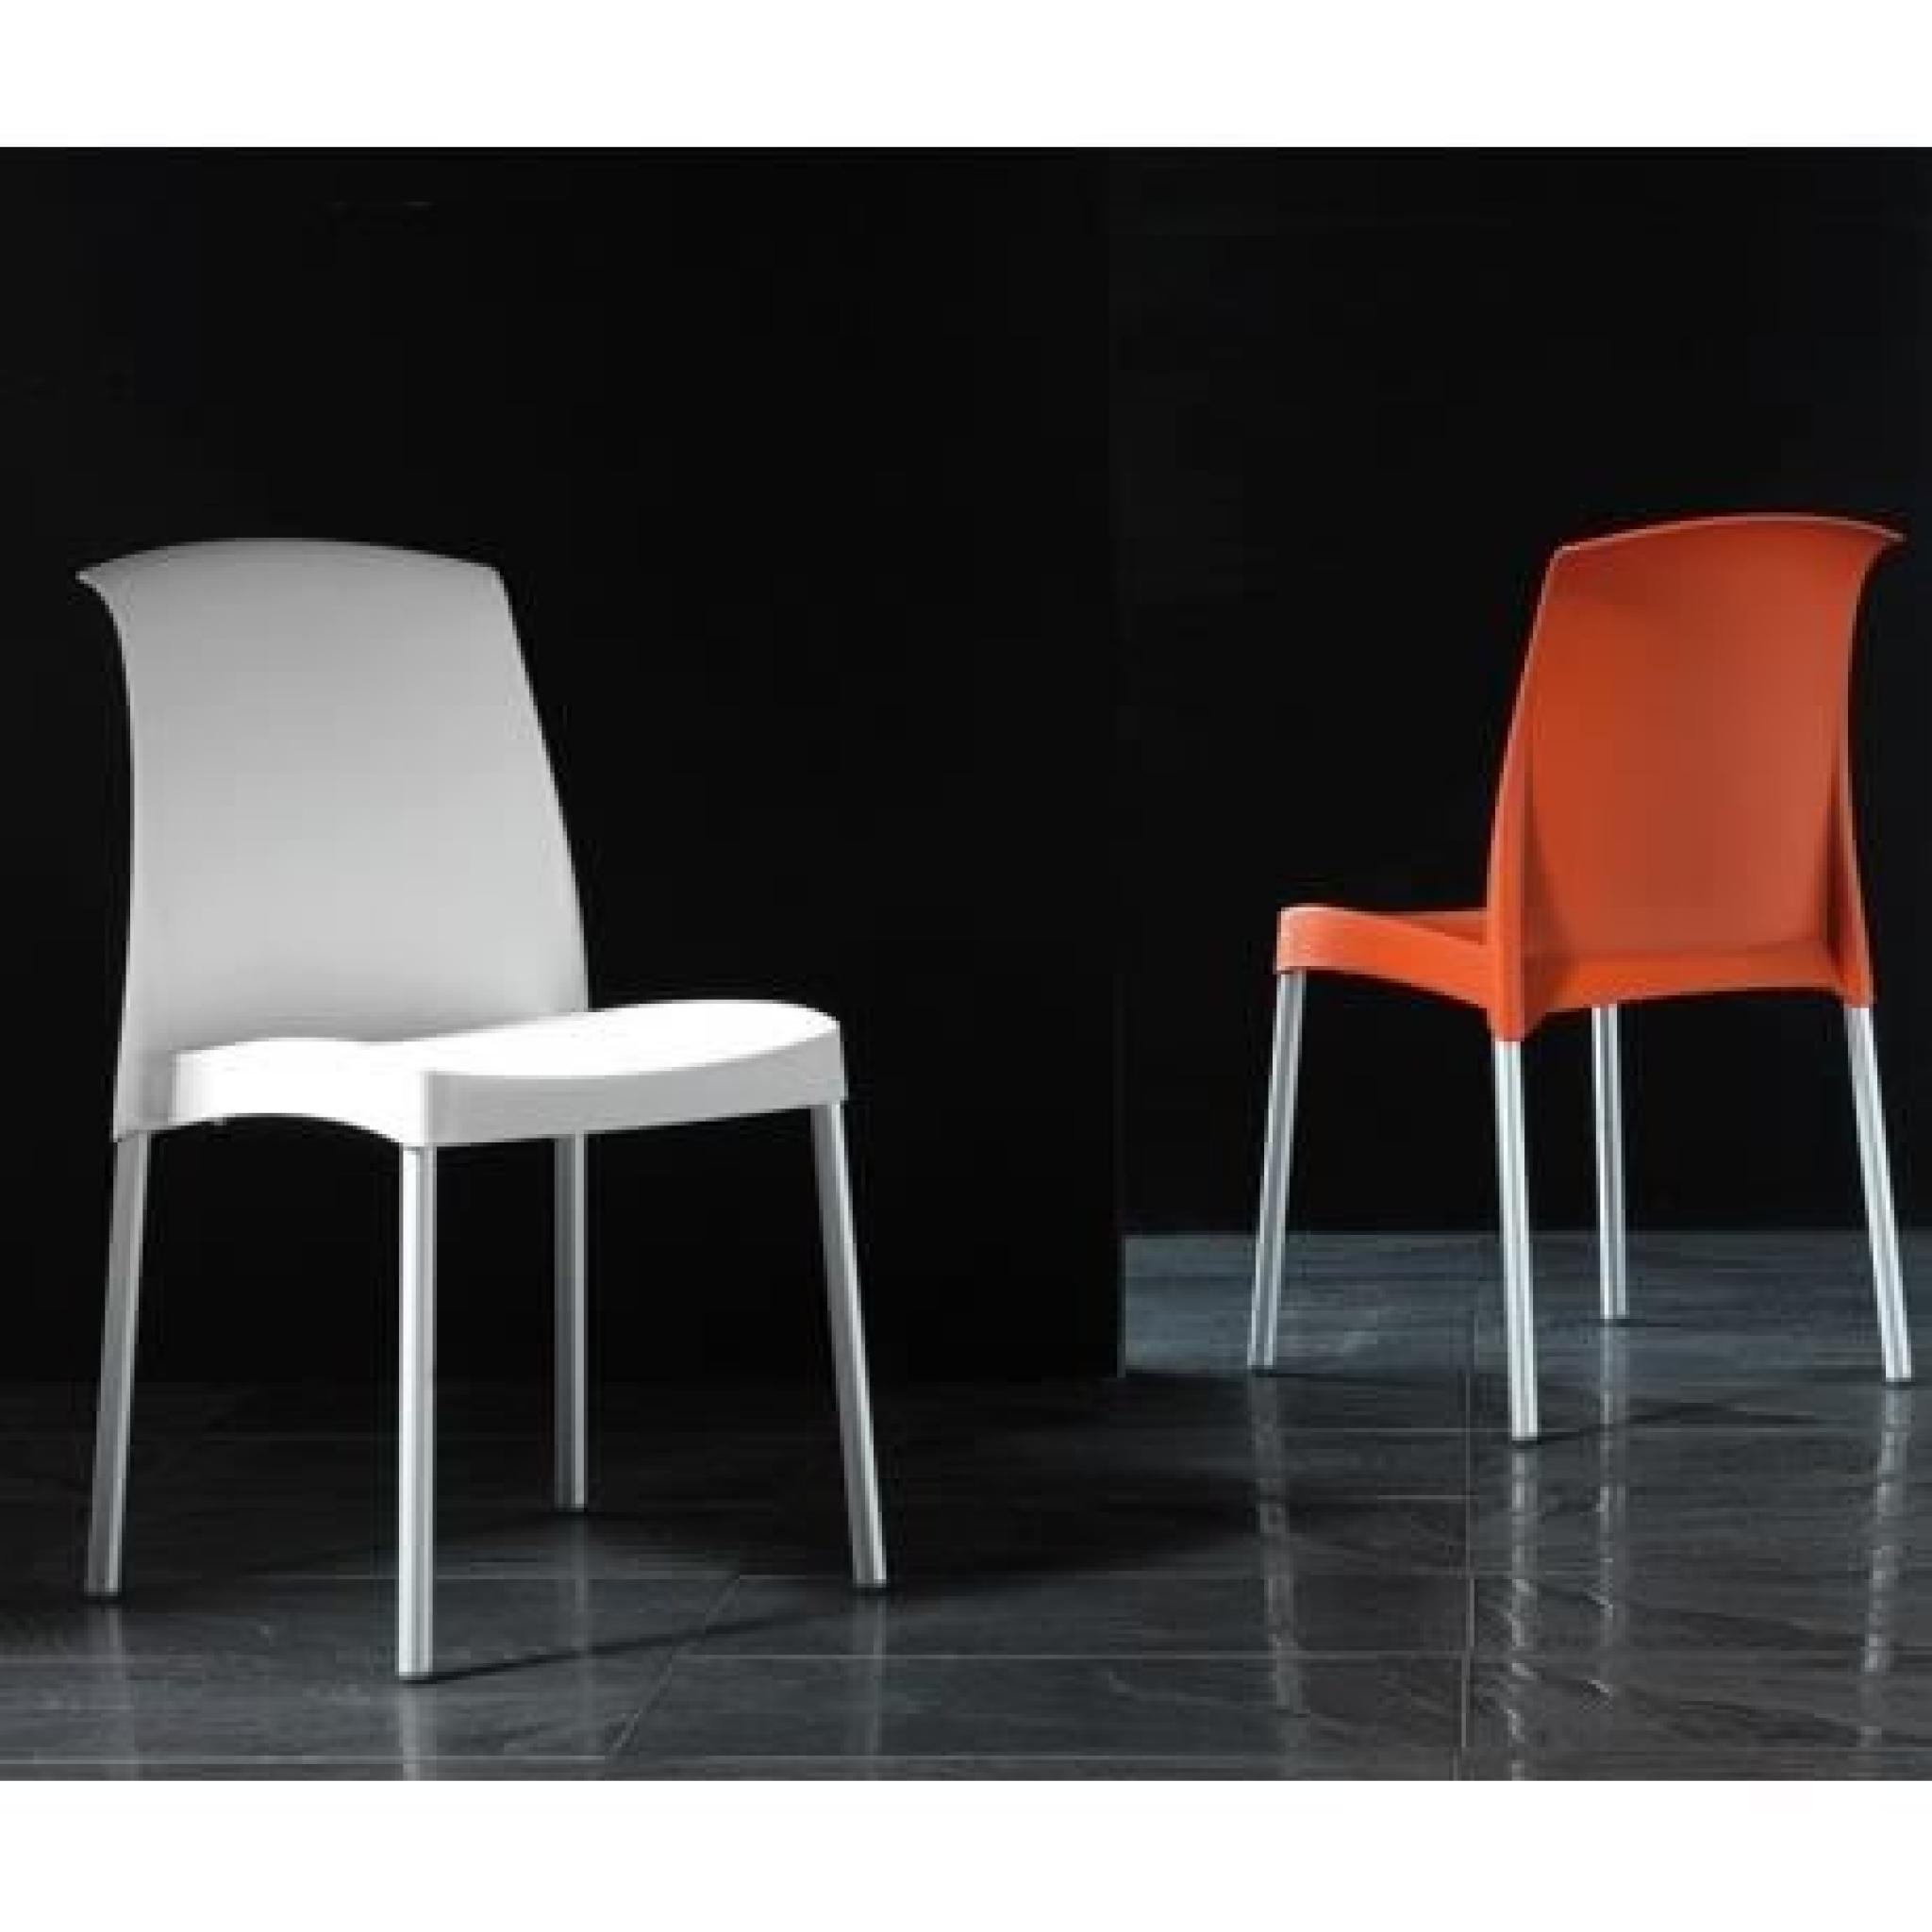 PABLO - Chaise en polypropylène orange